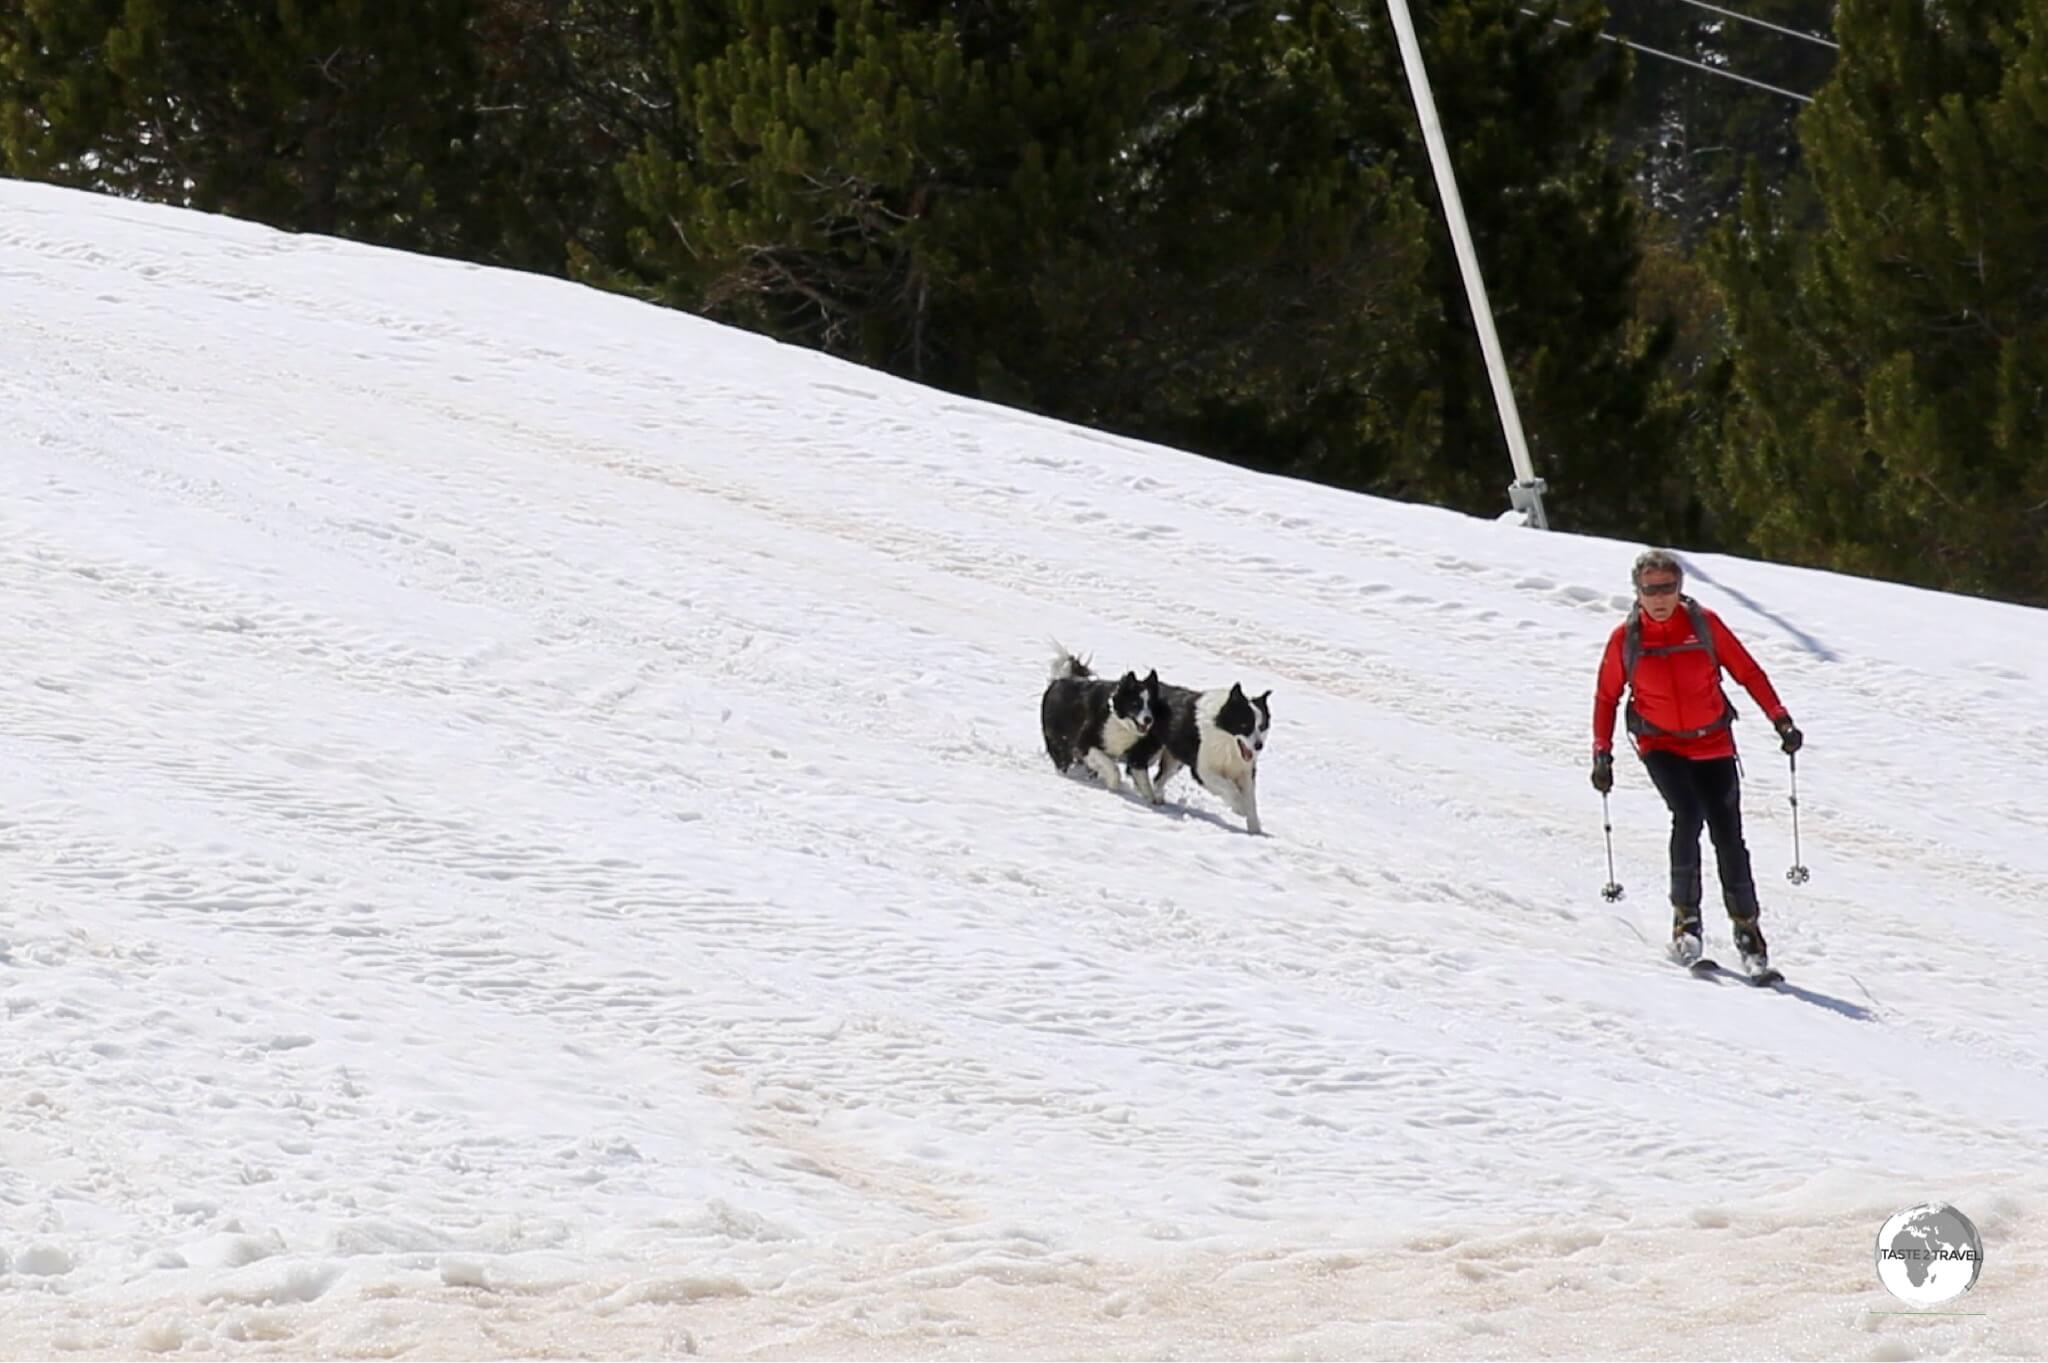 A novel way of walking the dogs at the Pal ski resort.